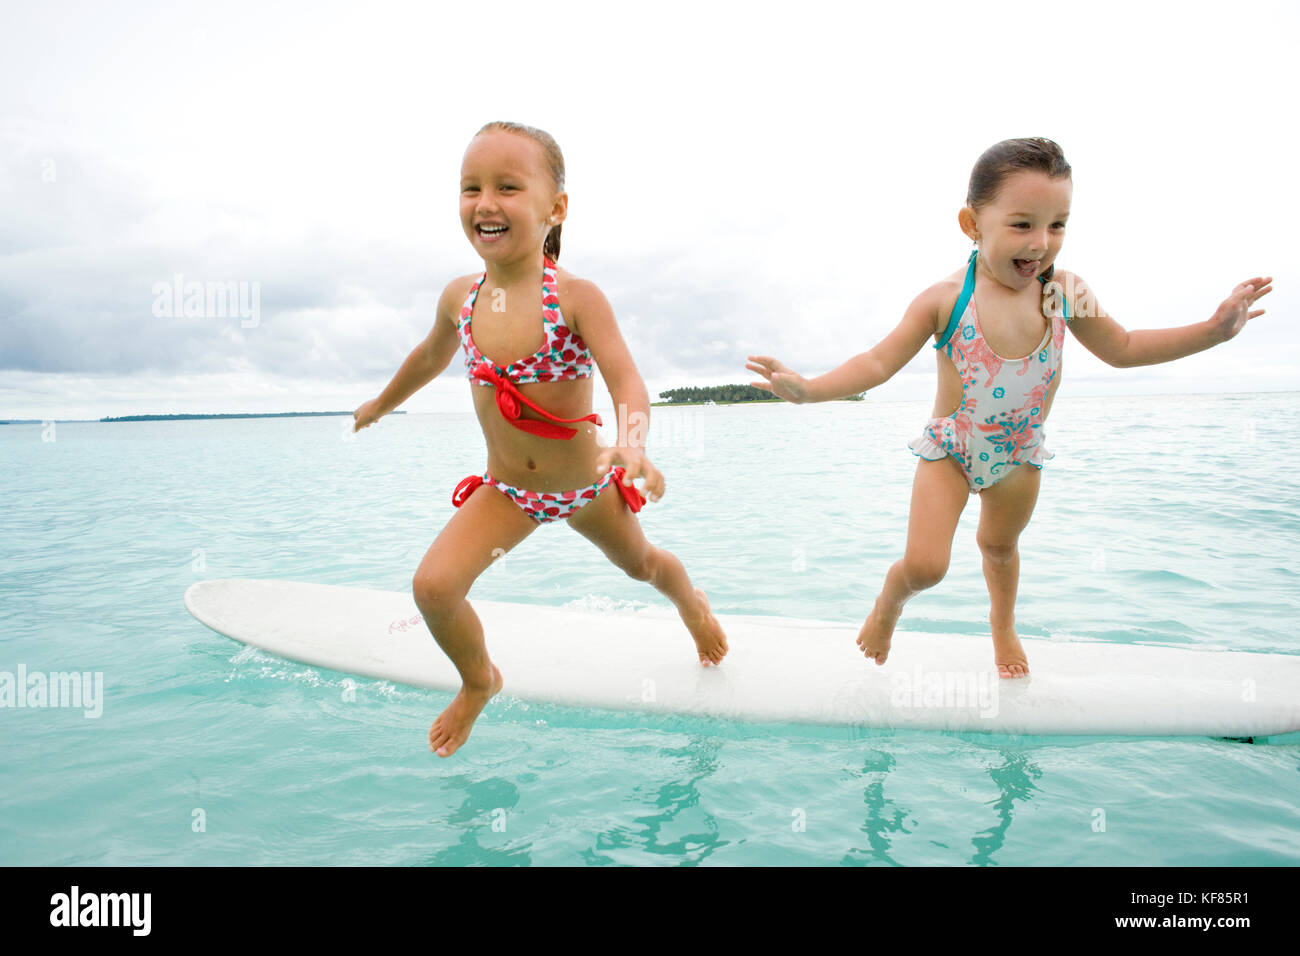 L'Indonésie, les îles Mentawai, kandui left resort, les filles sautant hors d'une planche de surf dans l'océan indien Banque D'Images